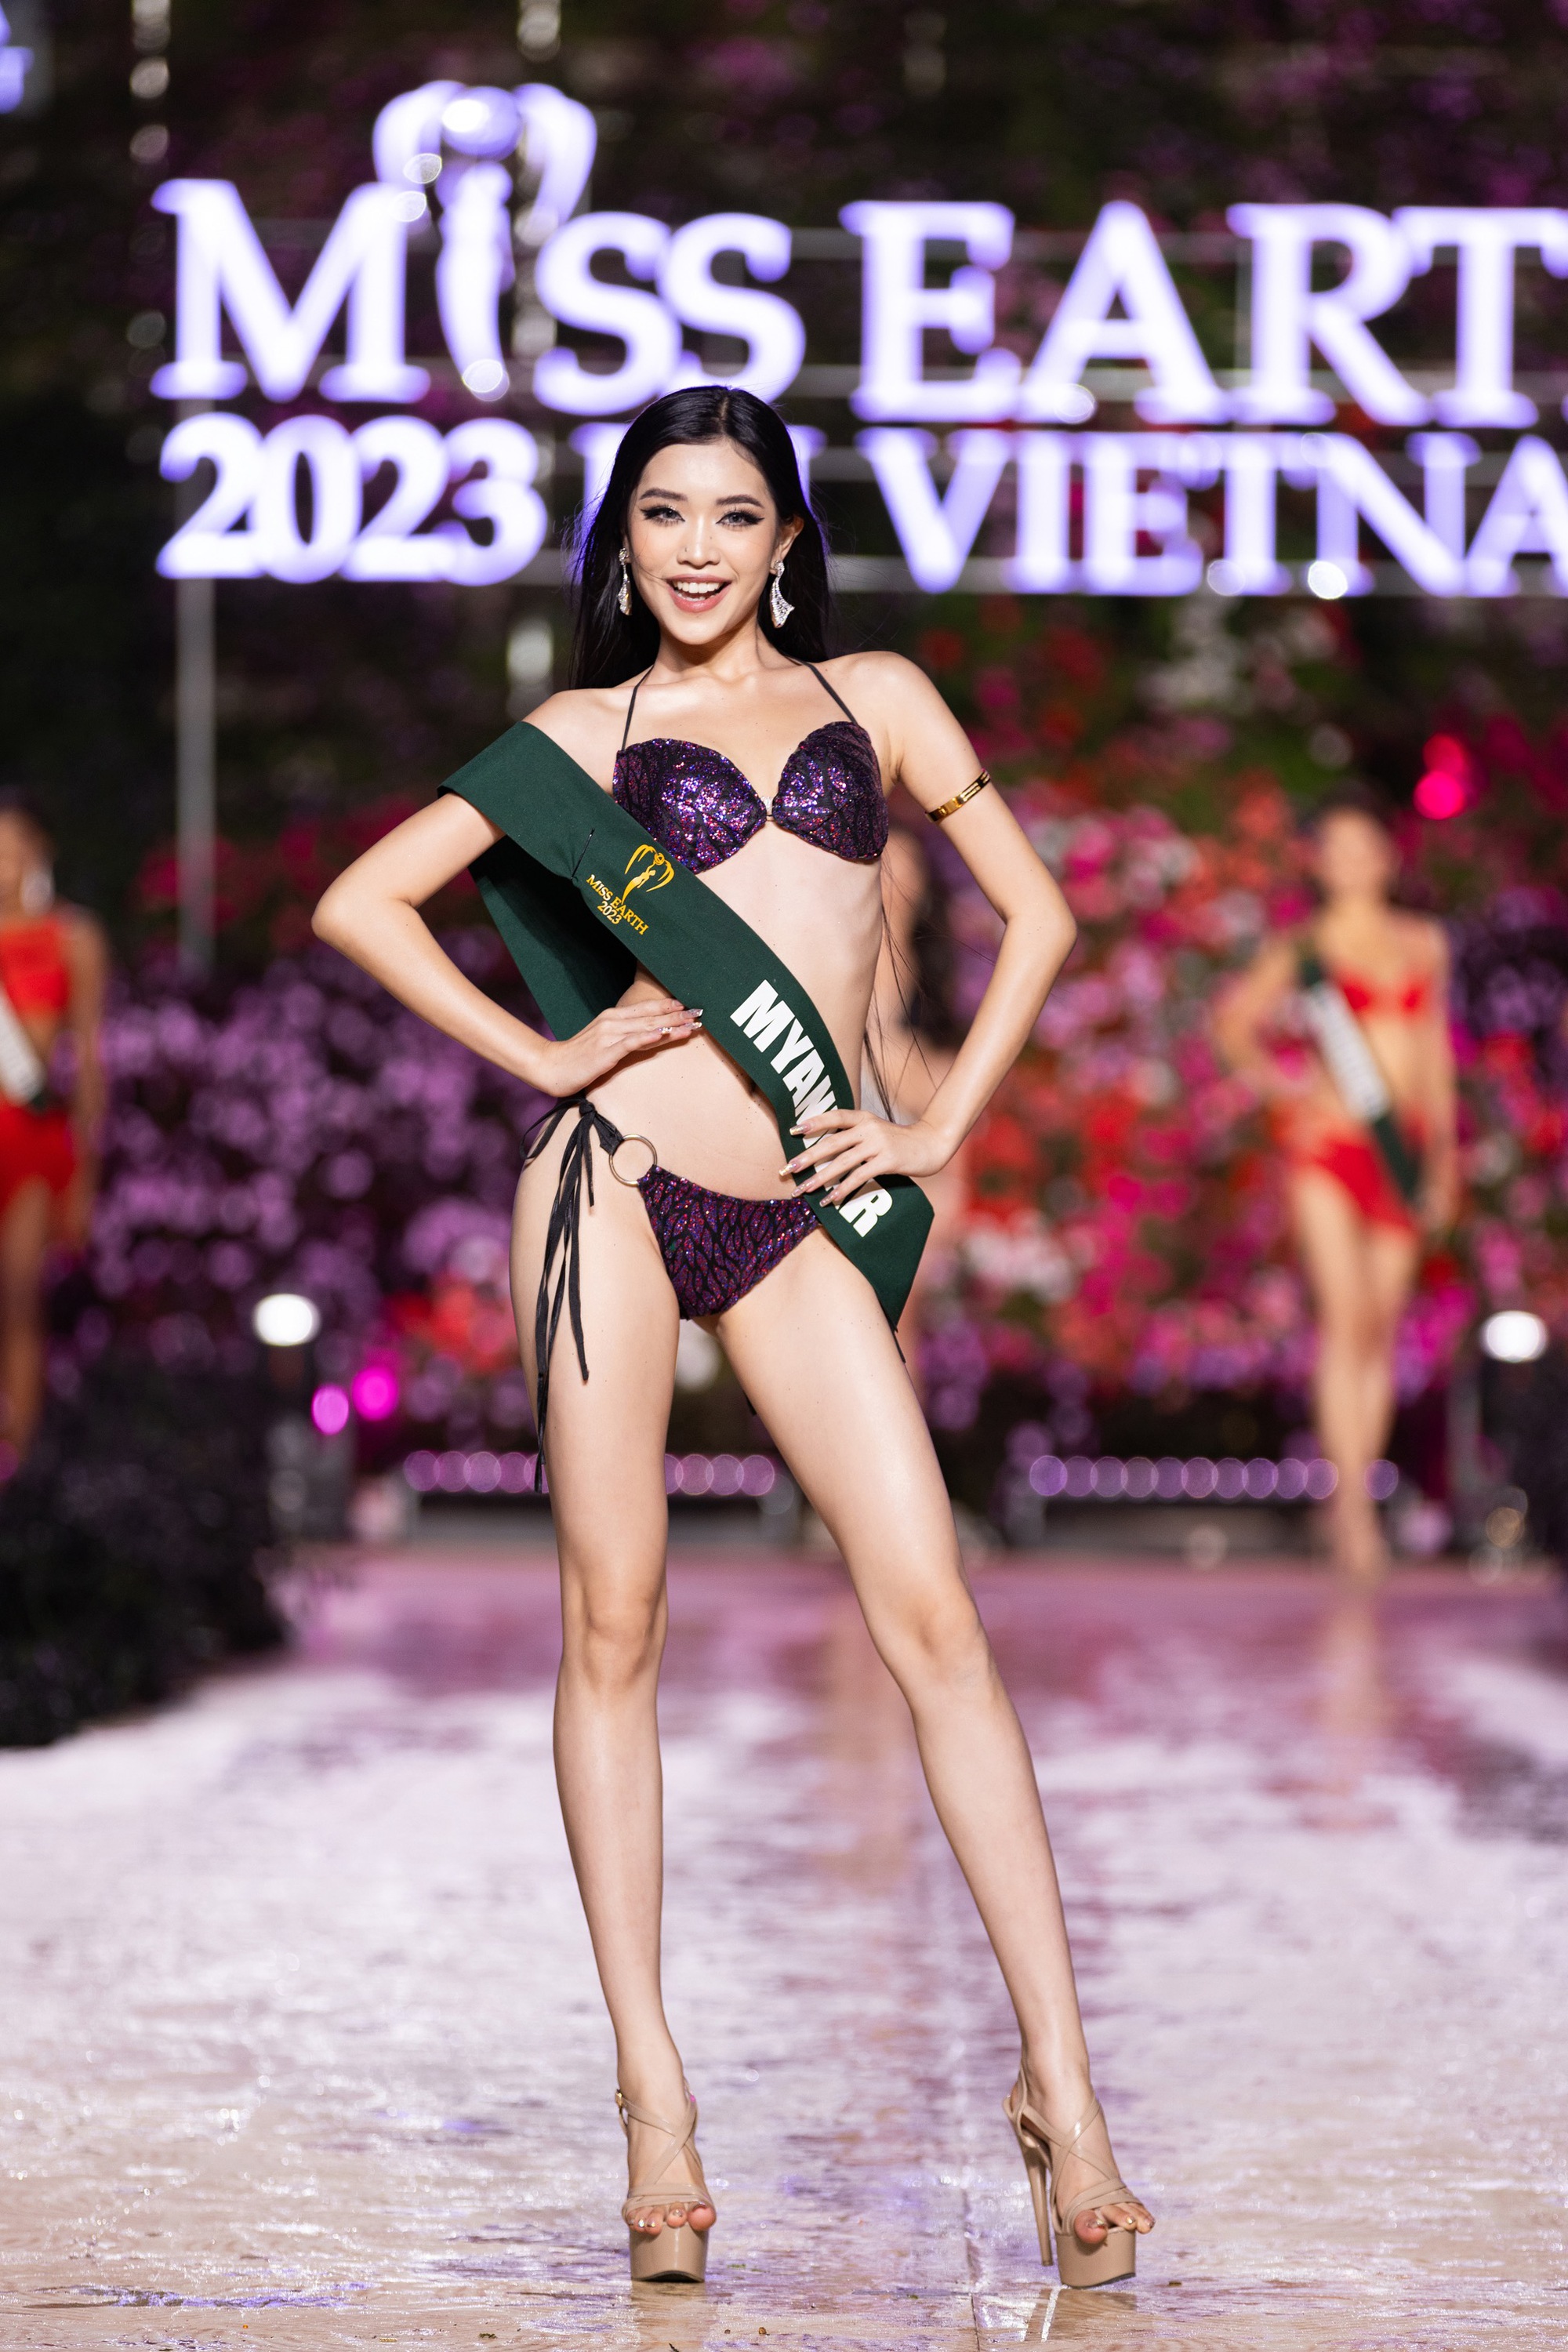 Dàn người đẹp Miss Earth 2023 khoe dáng nóng bỏng với bikini dưới trời lạnh 15 độ - Ảnh 20.